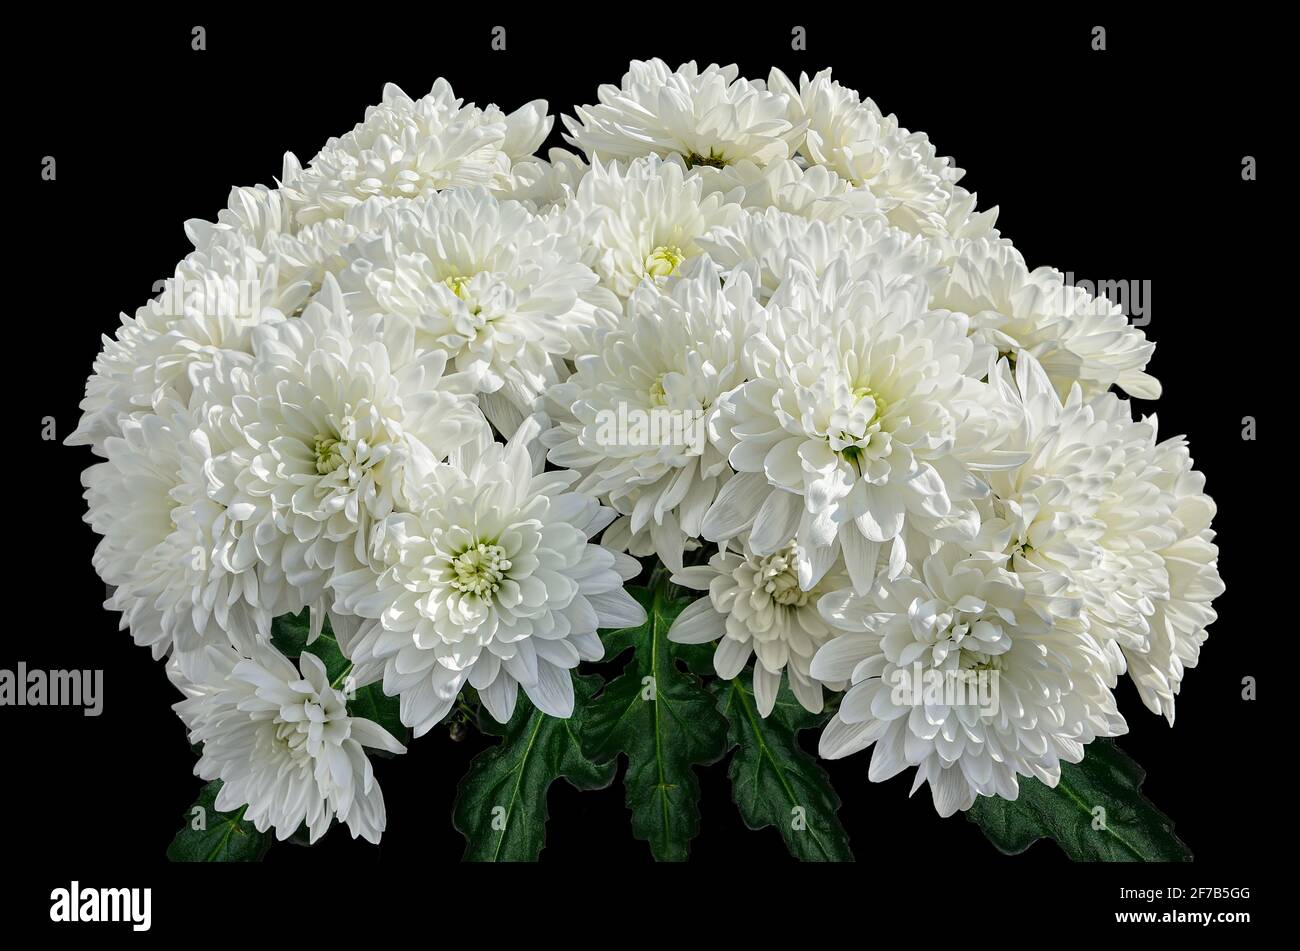 Bouquet de fleurs de chrysanthème blanc sur fond noir. Décor floral naturel - pour des événements heureux ou tristes. À l'est, c'est un signe de bonne chance Banque D'Images